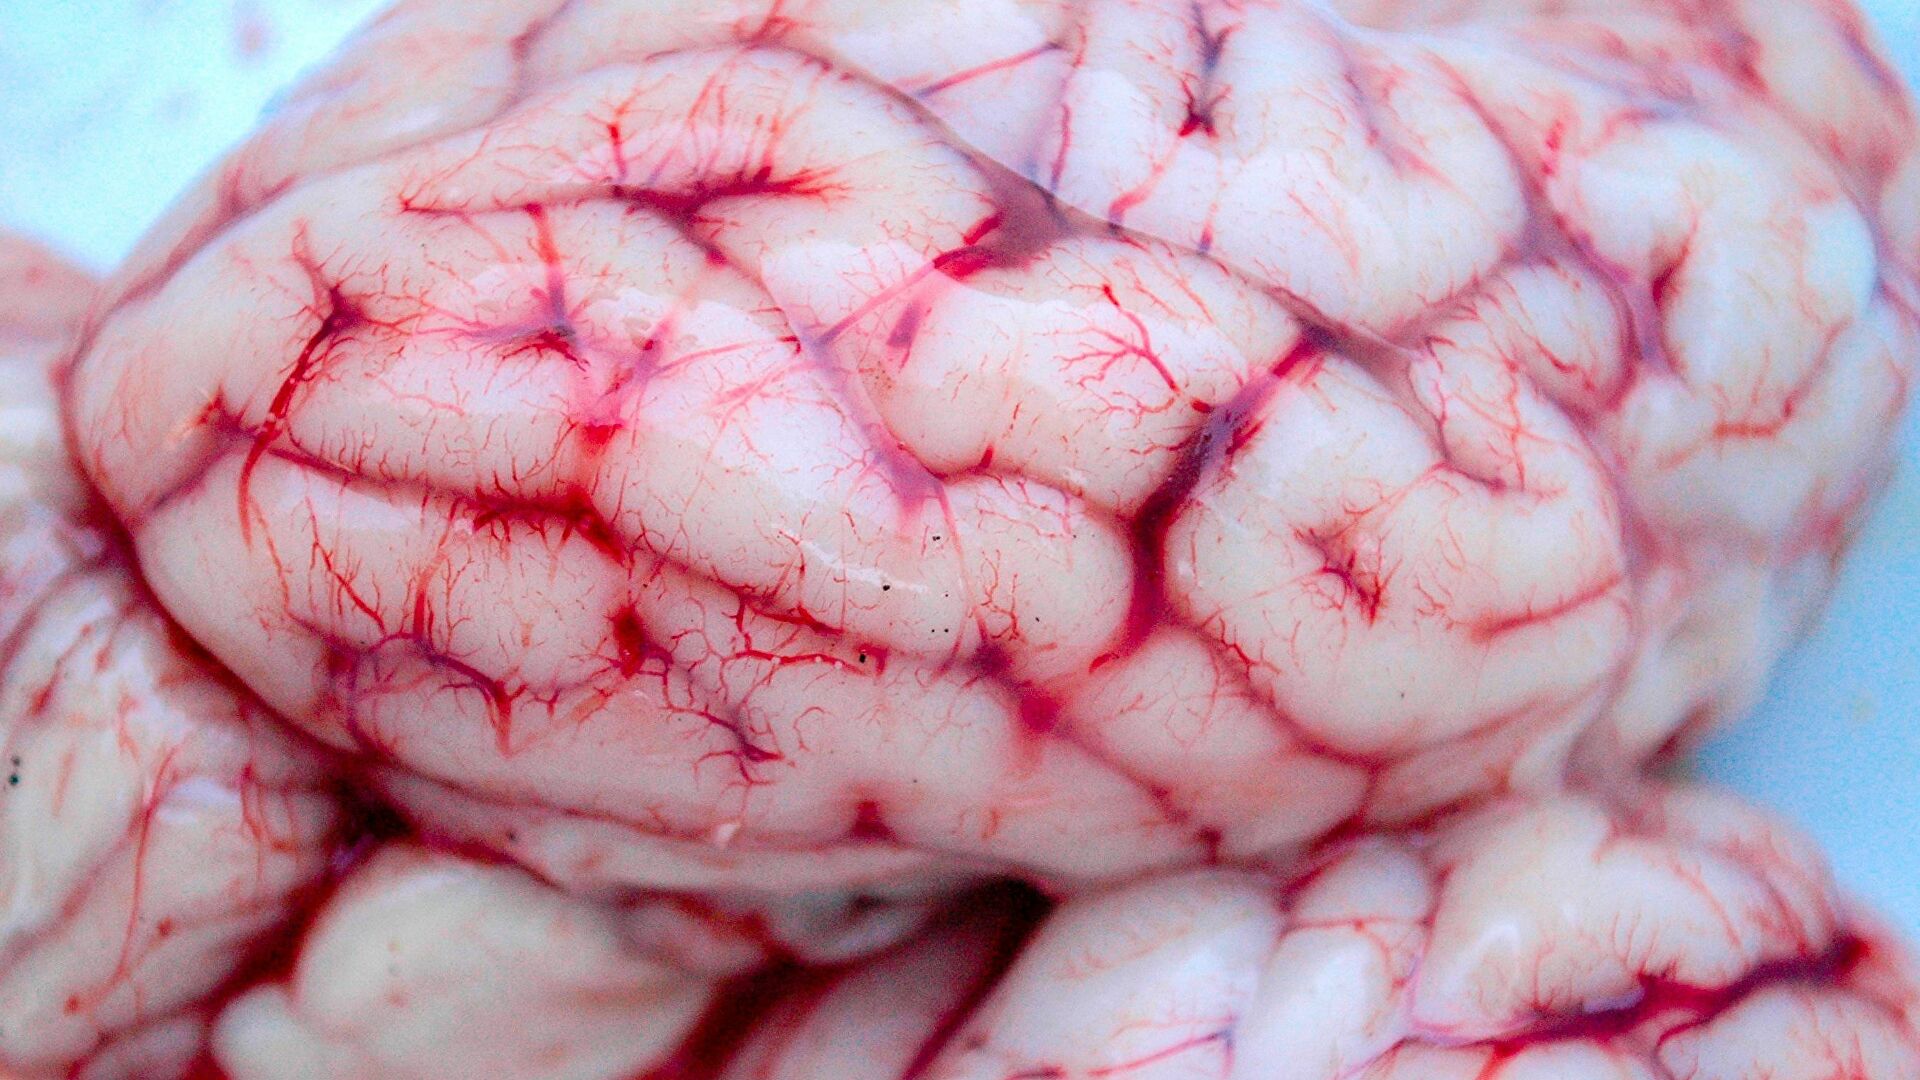 دراسة : مرض "كوفيد 19" قد يسبب إنكماشا في الدماغ!